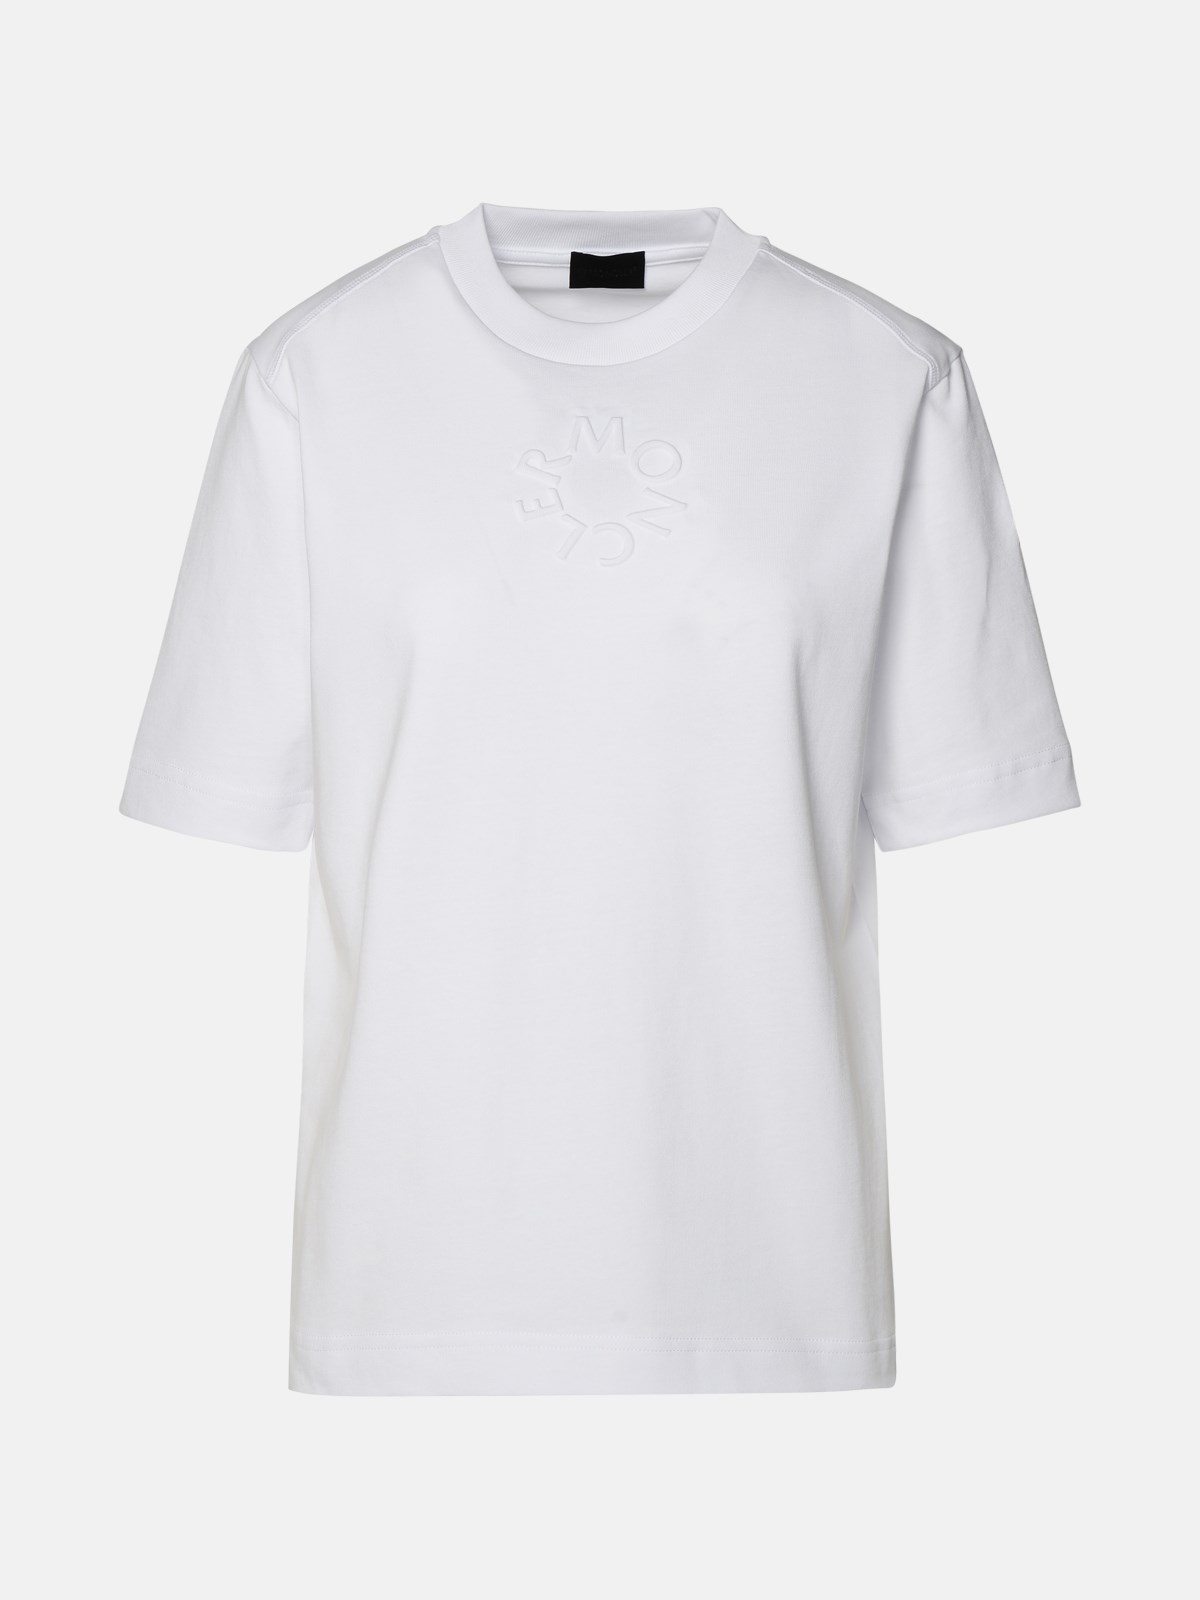 Moncler Kids' T-shirt Logo In White